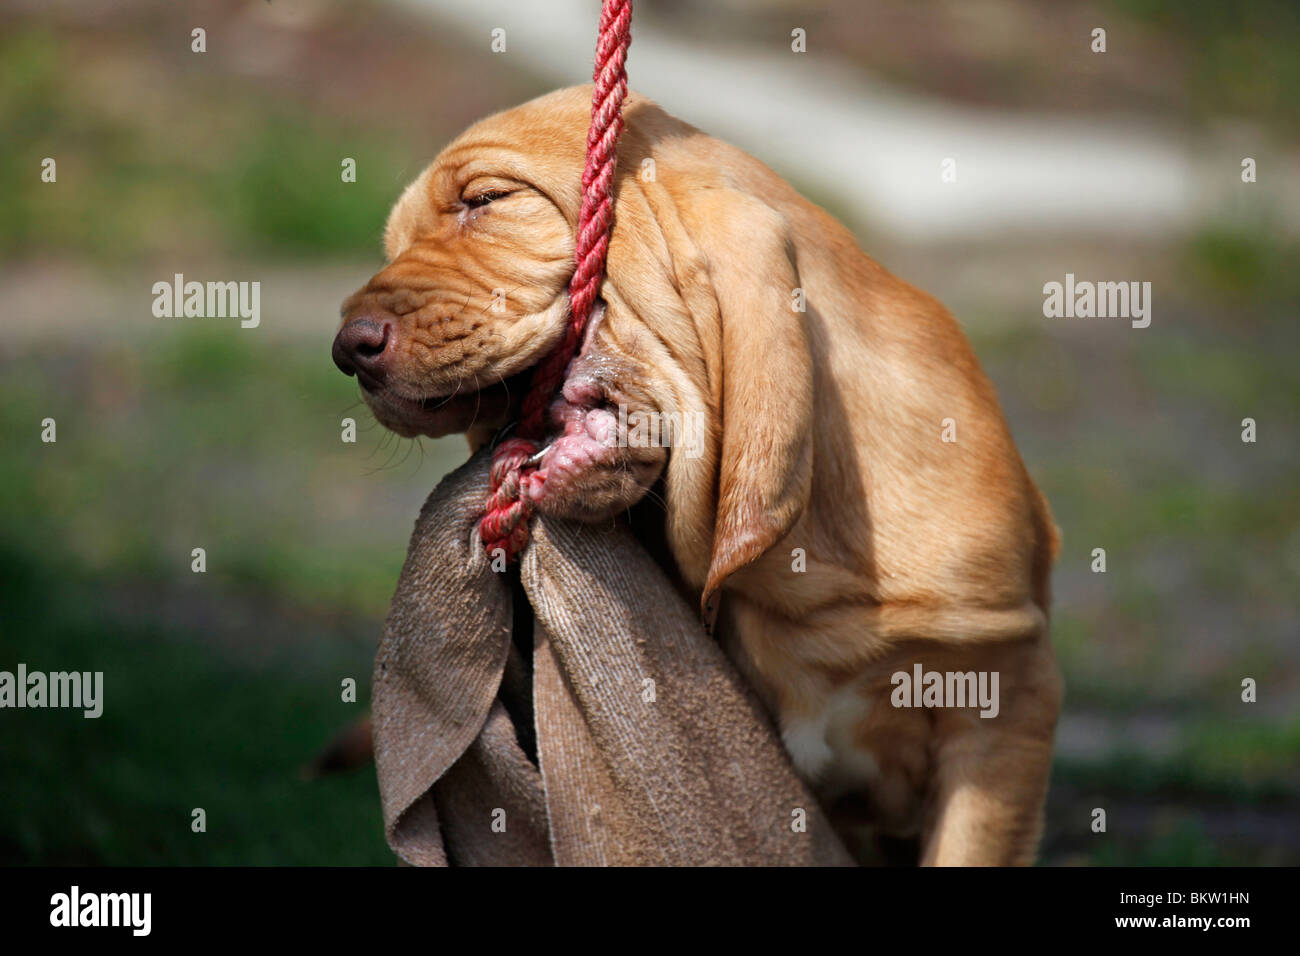 Bluthund Welpe Portrait / Bloodhound Puppy Portrait Stock Photo